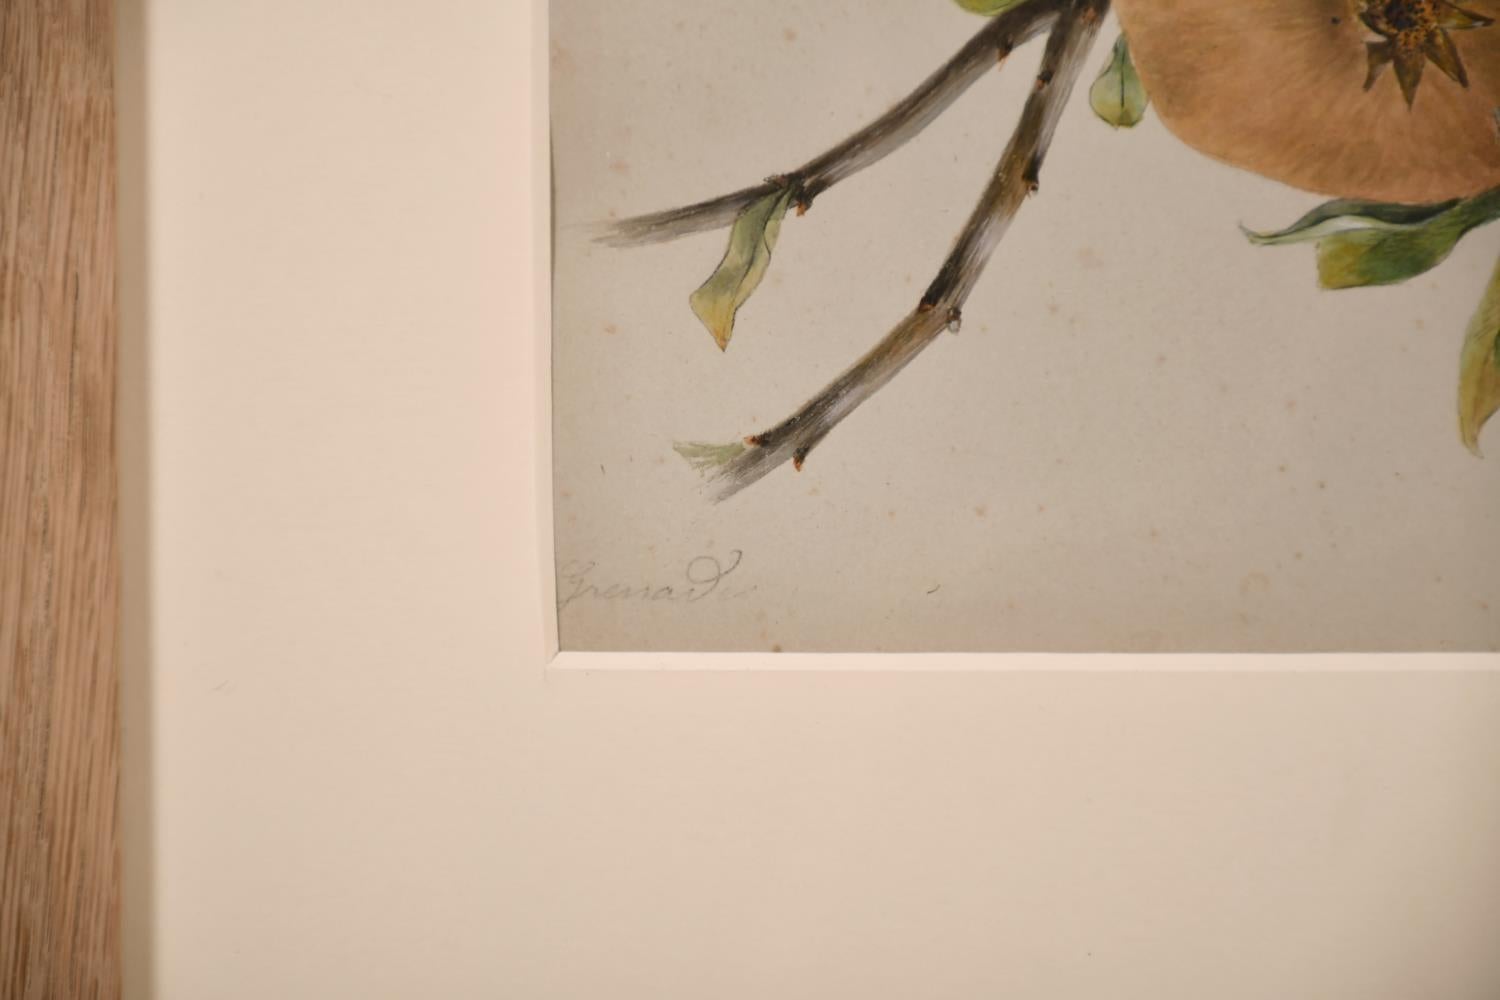 Künstler/Schule: Englische Schule, 19. Jahrhundert, undeutlich signiert in der unteren Ecke.

Titel: Botanische Studie zweier Äpfel mit einem Zweig neben ihnen.

Zeichnung in Aquarell auf Papier:

Größe: Bild: 9,75 x 6,5 Zoll, Gesamtrahmen: 17